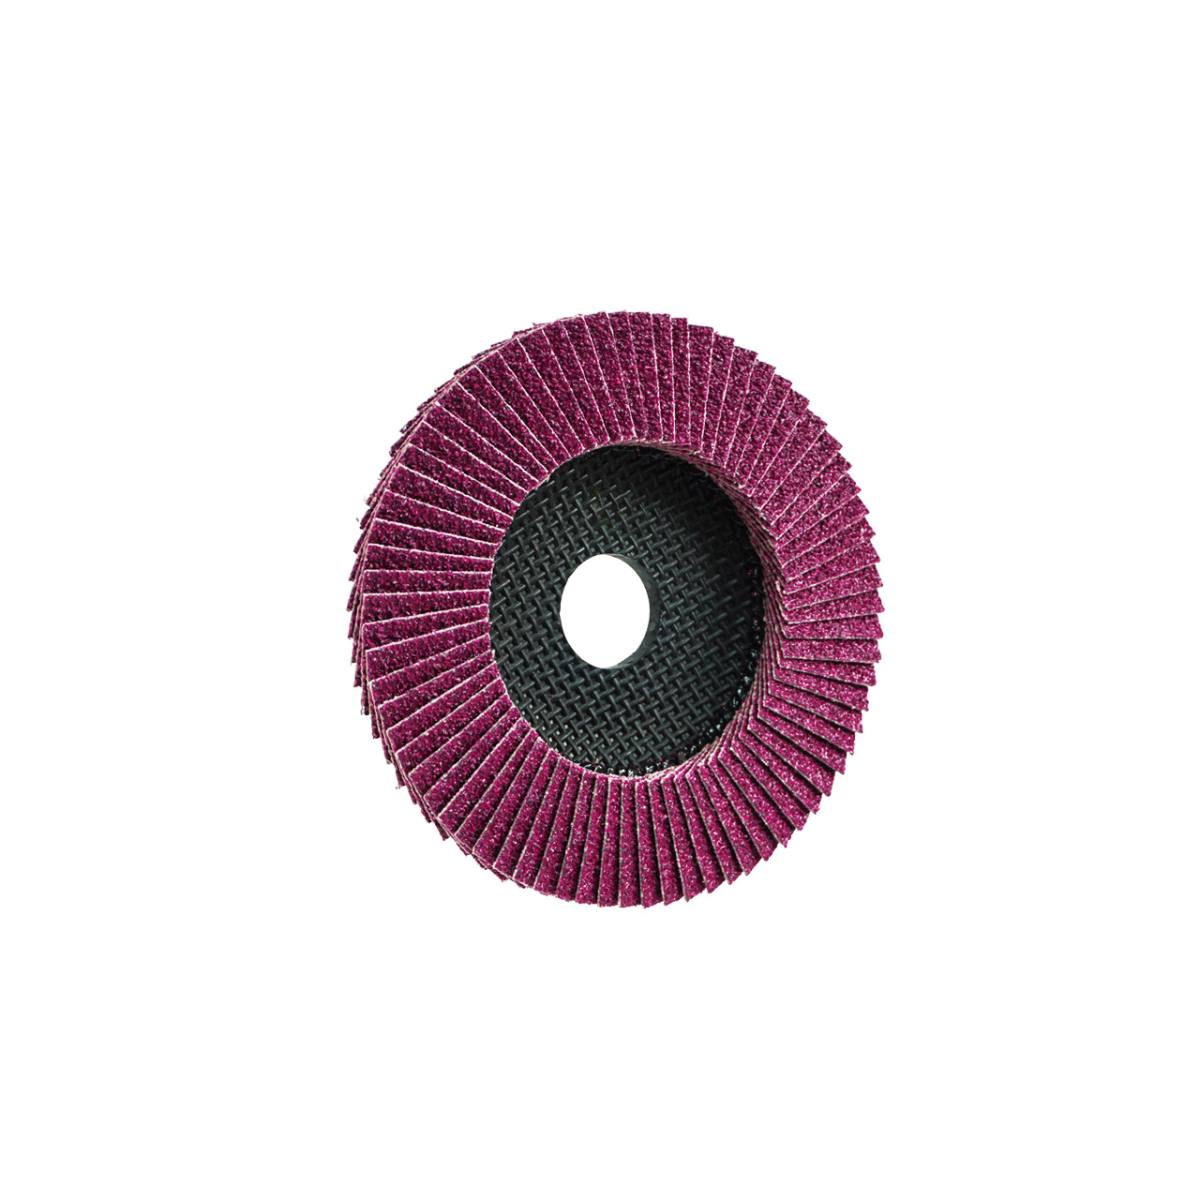 TRIMFIX BLACK MAMBA, 115 mm x 22.2 mm, grit 40, flap disc